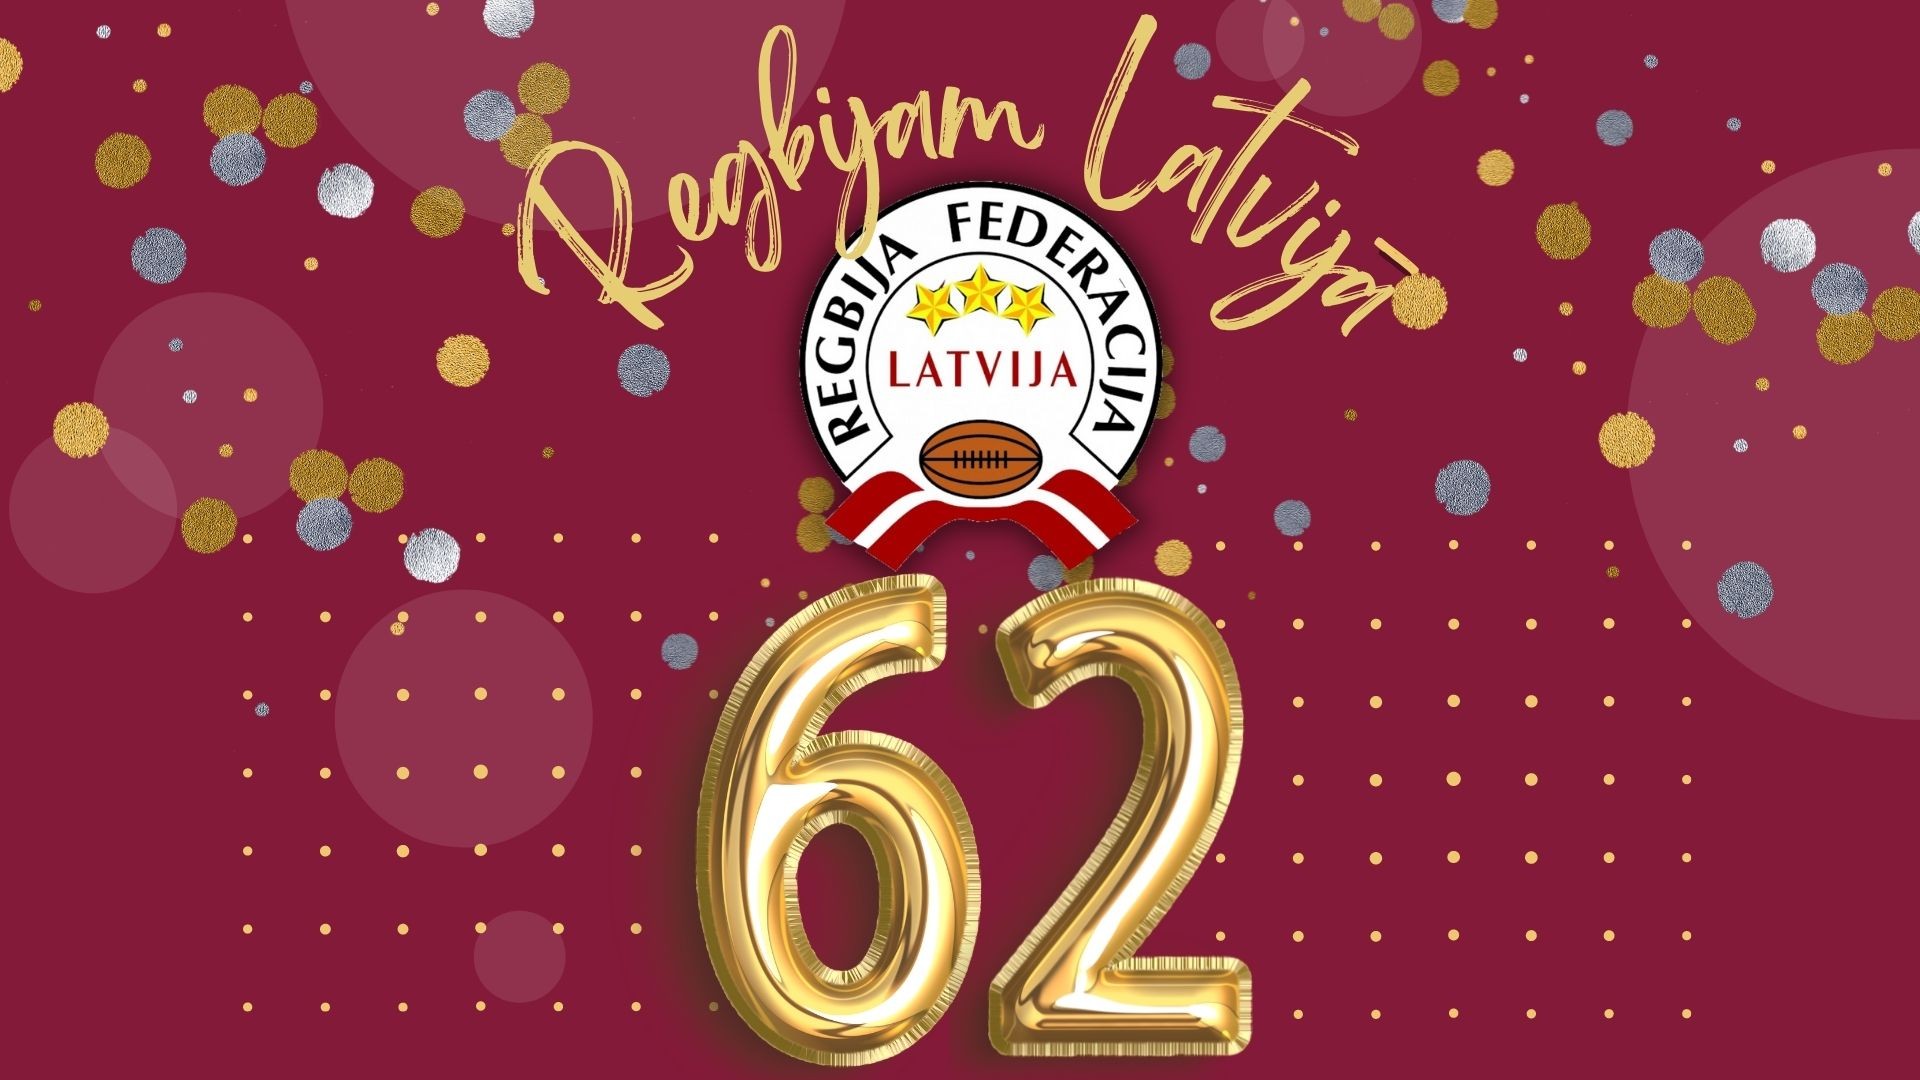 Regbijam Latvijā šodien 62.dzimšanas diena!